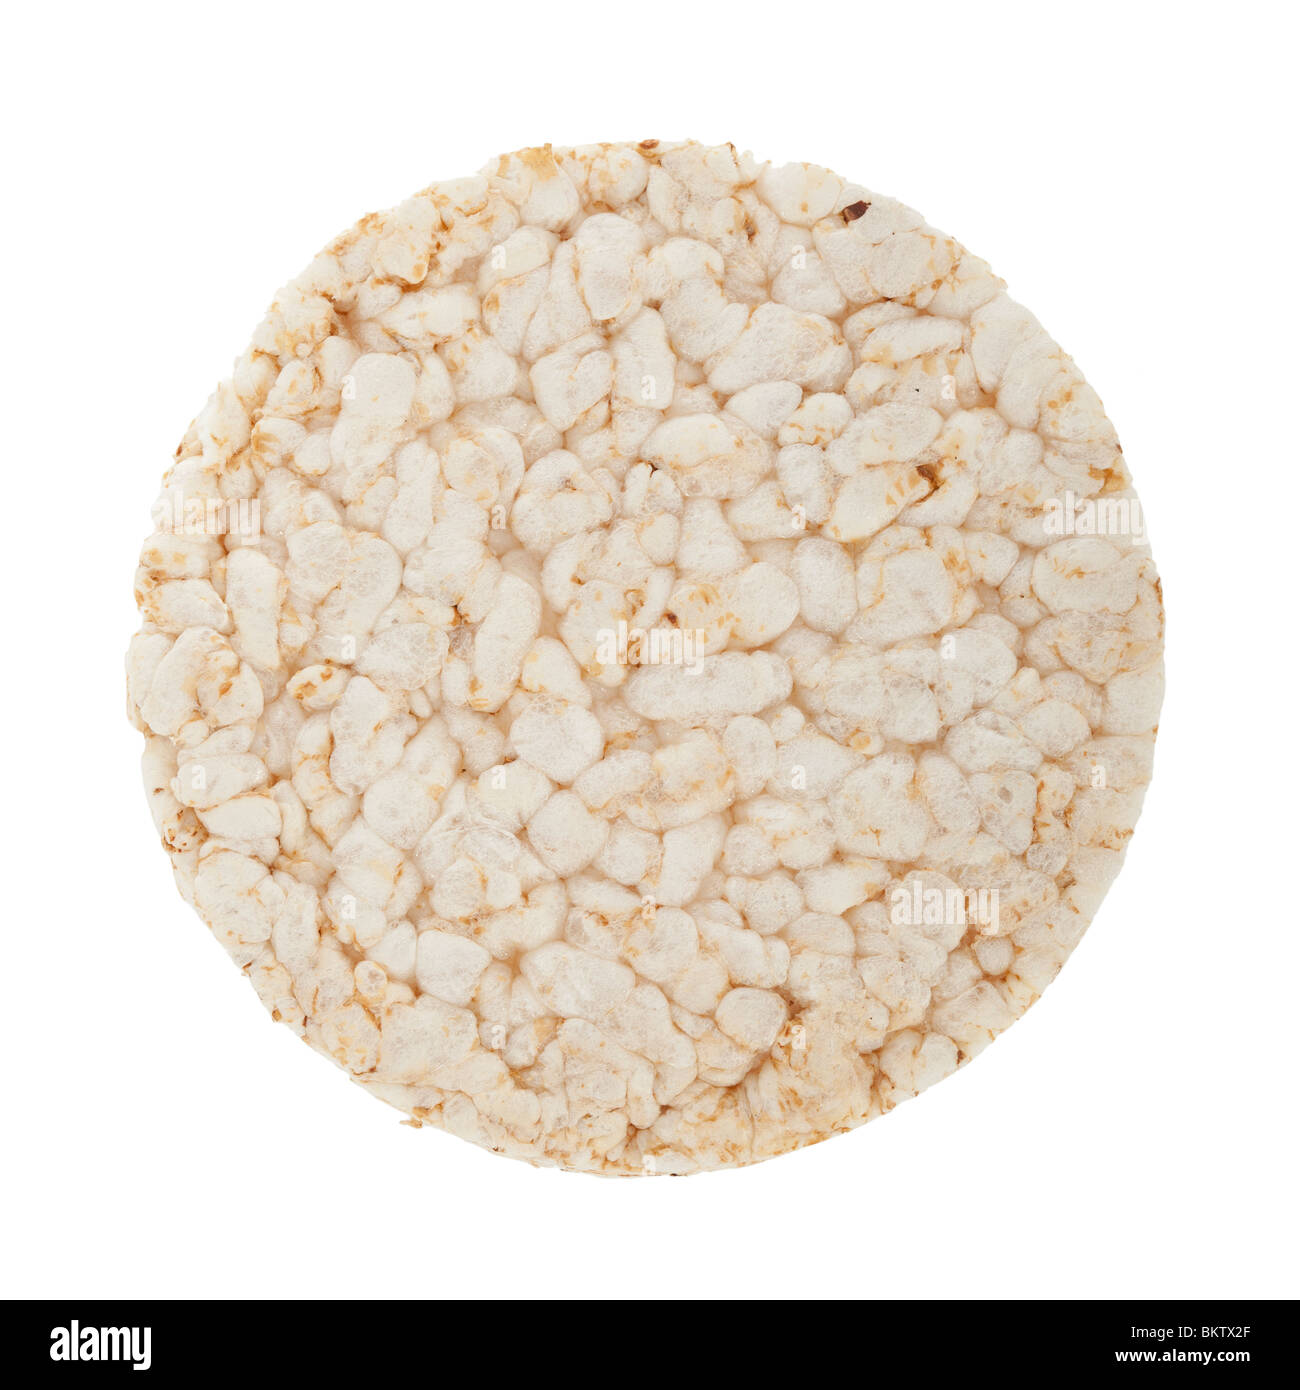 Single rice cake isolated on white background Stock Photo